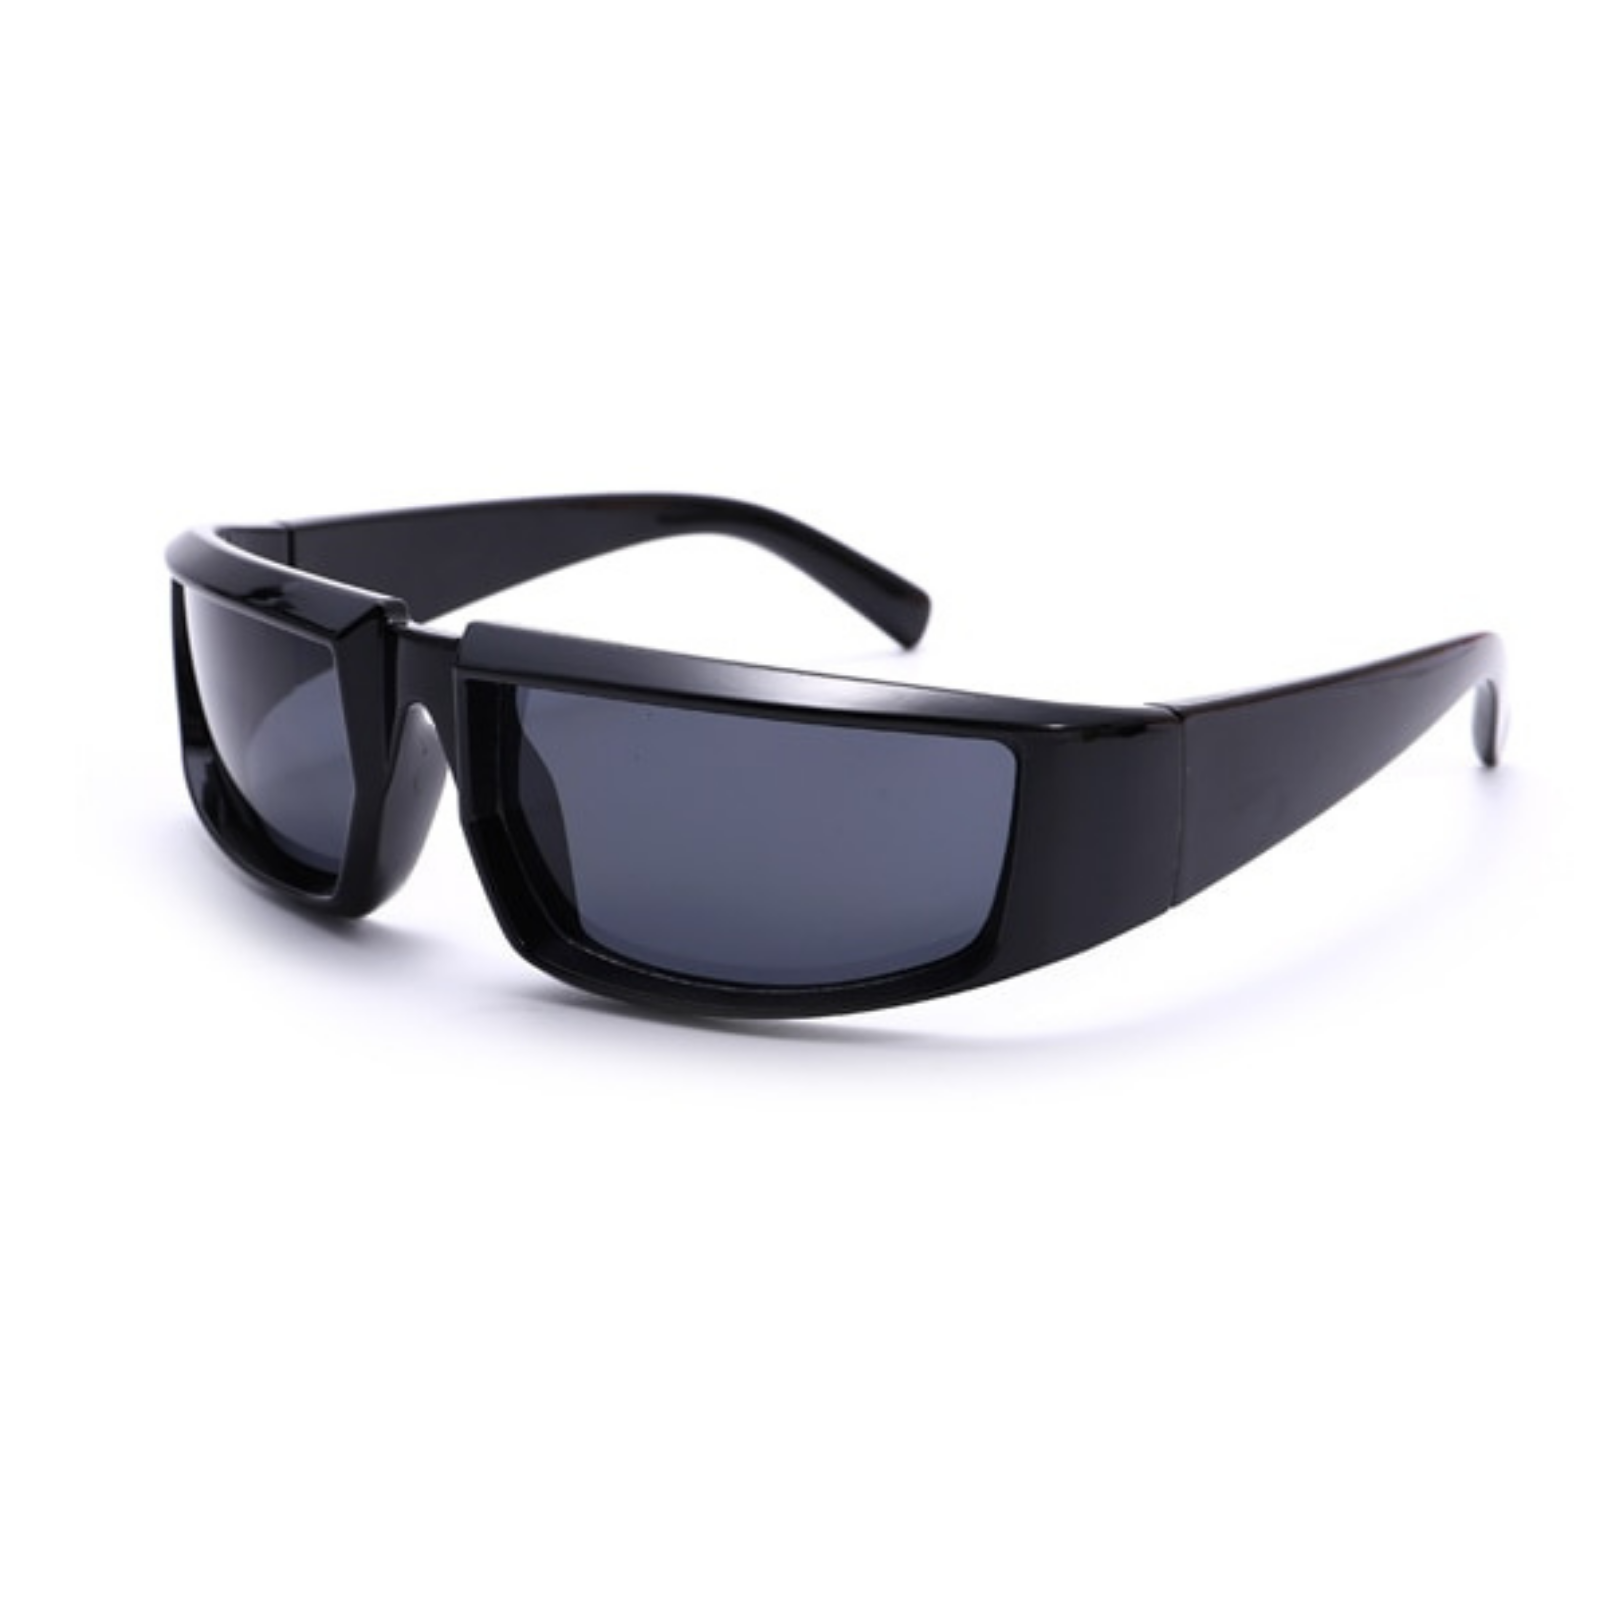 Lexus Sunglasses + Black